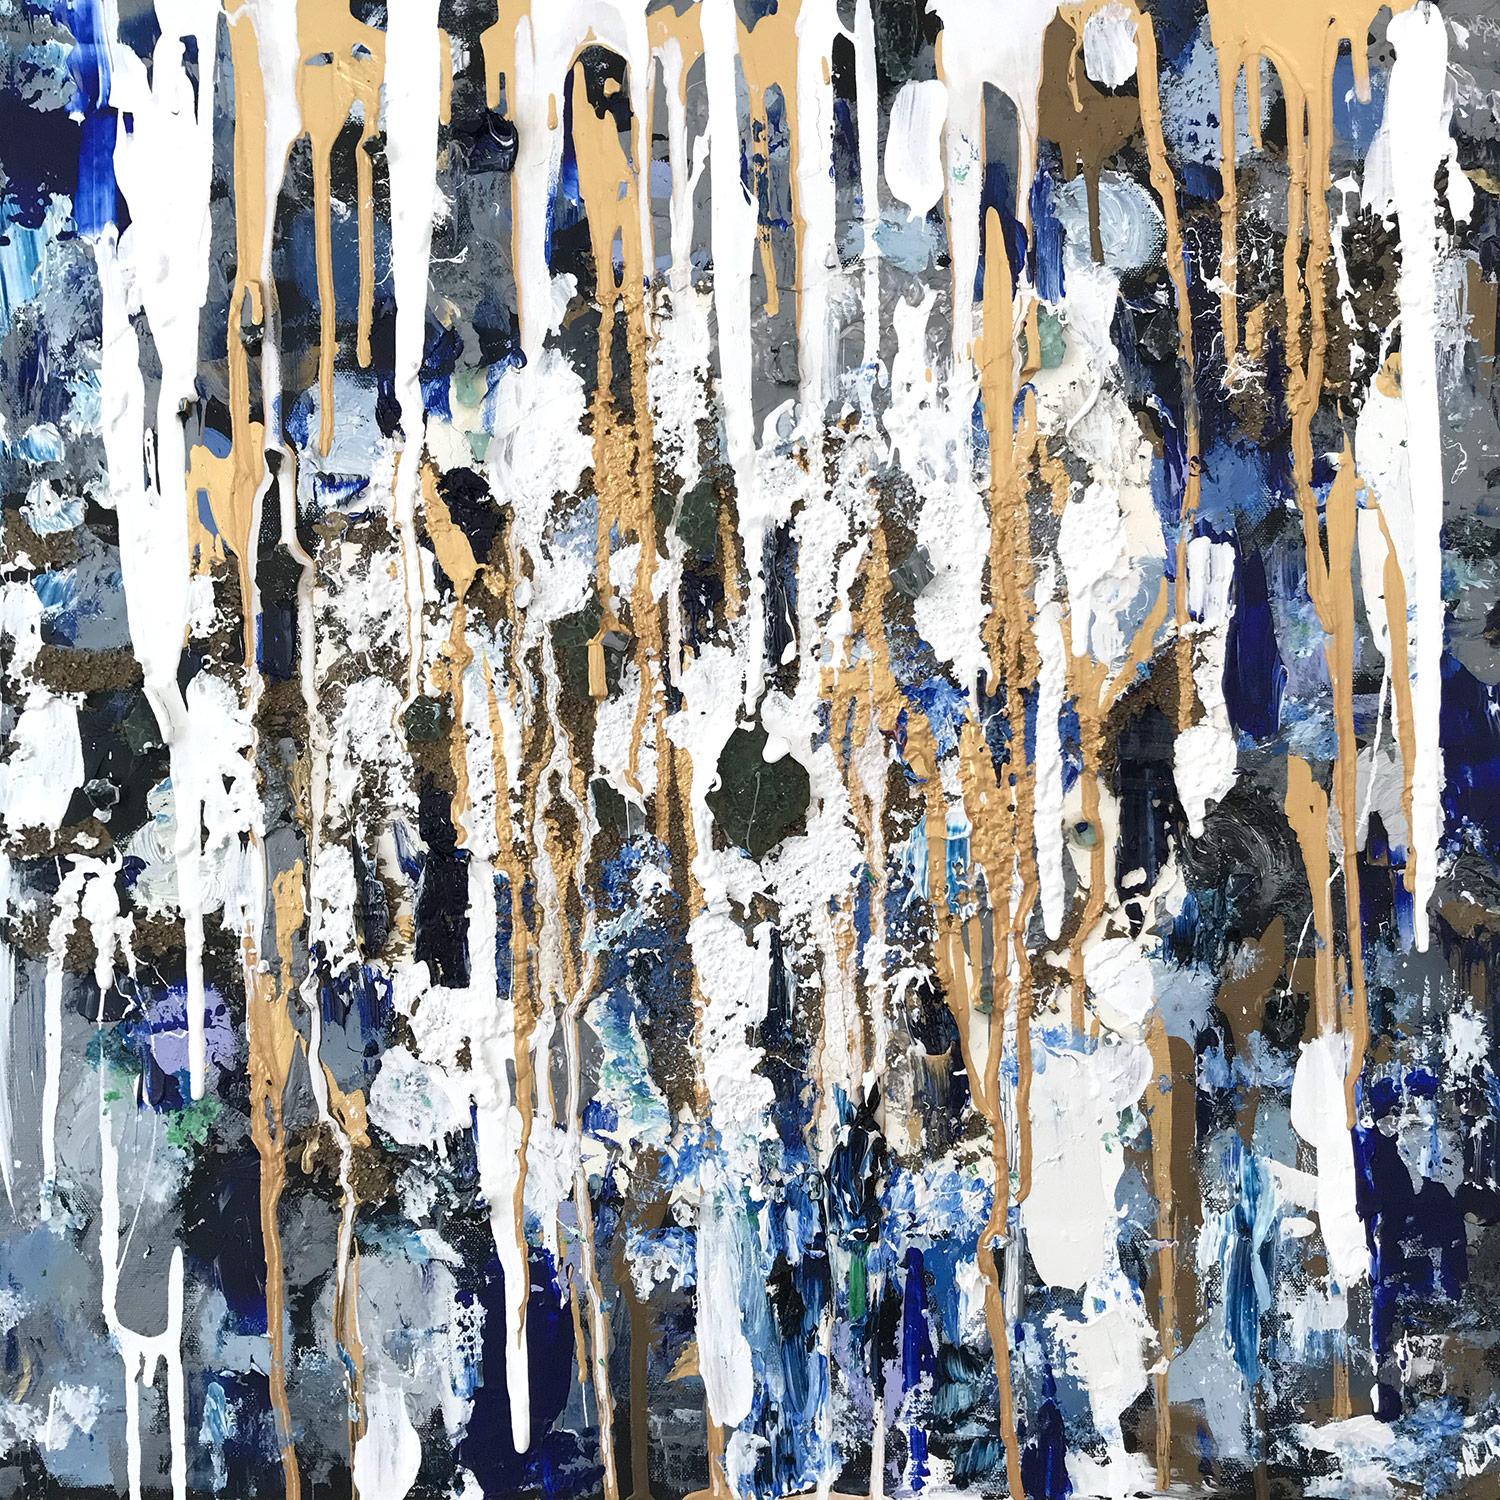 Abstract Painting Cindy Shaoul - "Contemplation" Peinture contemporaine à l'huile et techniques mixtes sur toile